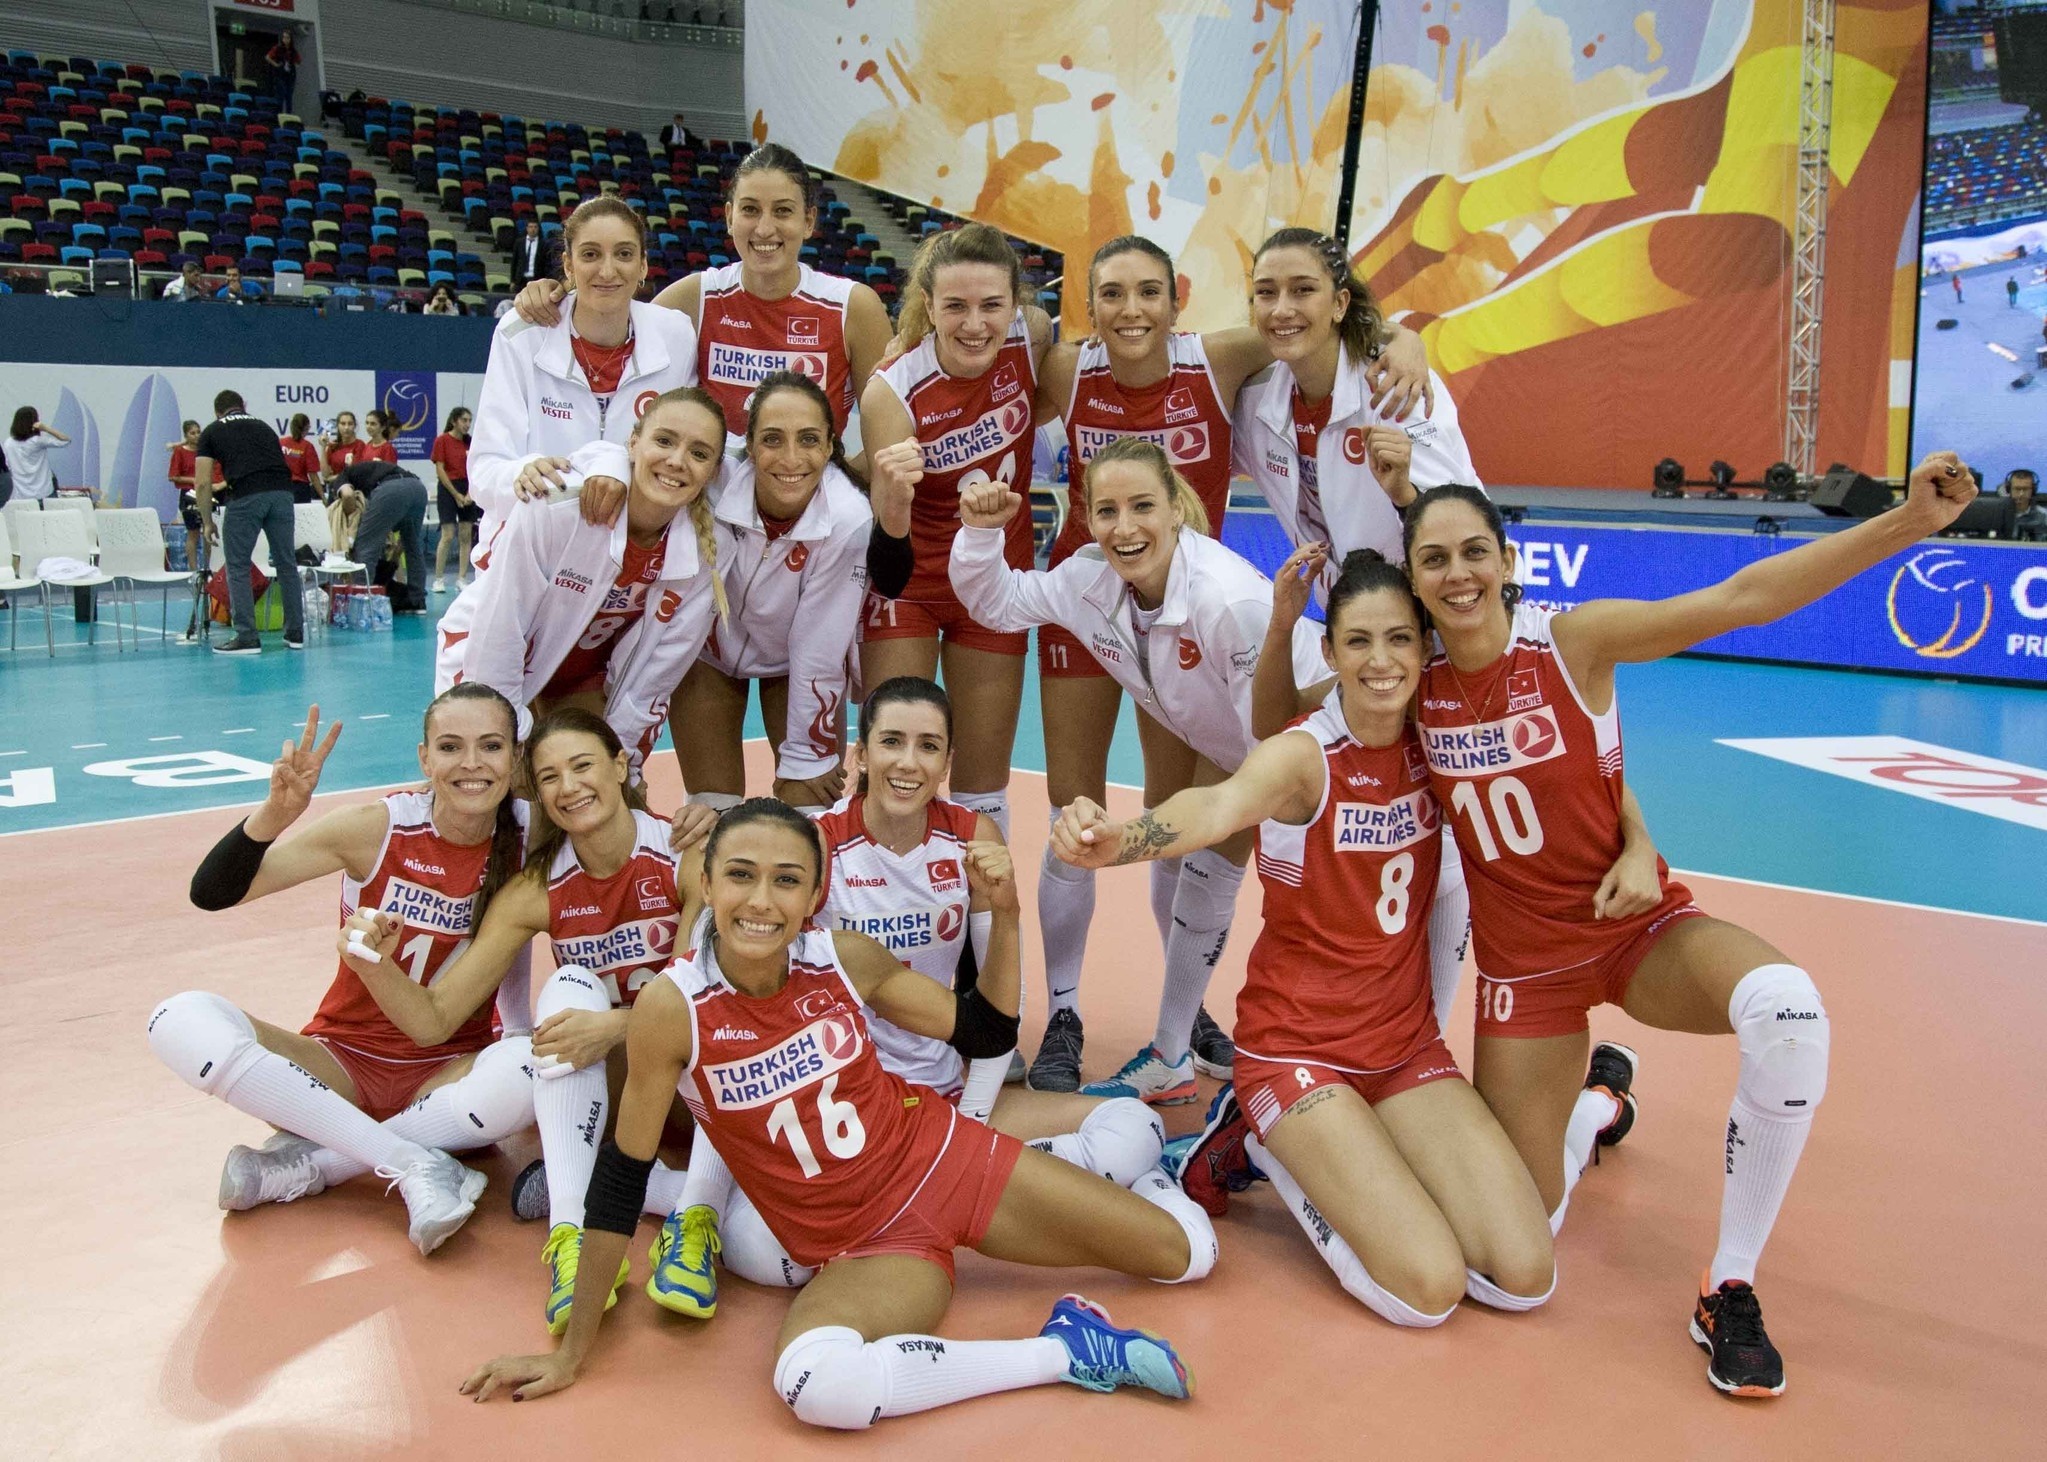 Turkey advances to quarterfinals of 2017 Women's European Volleyball